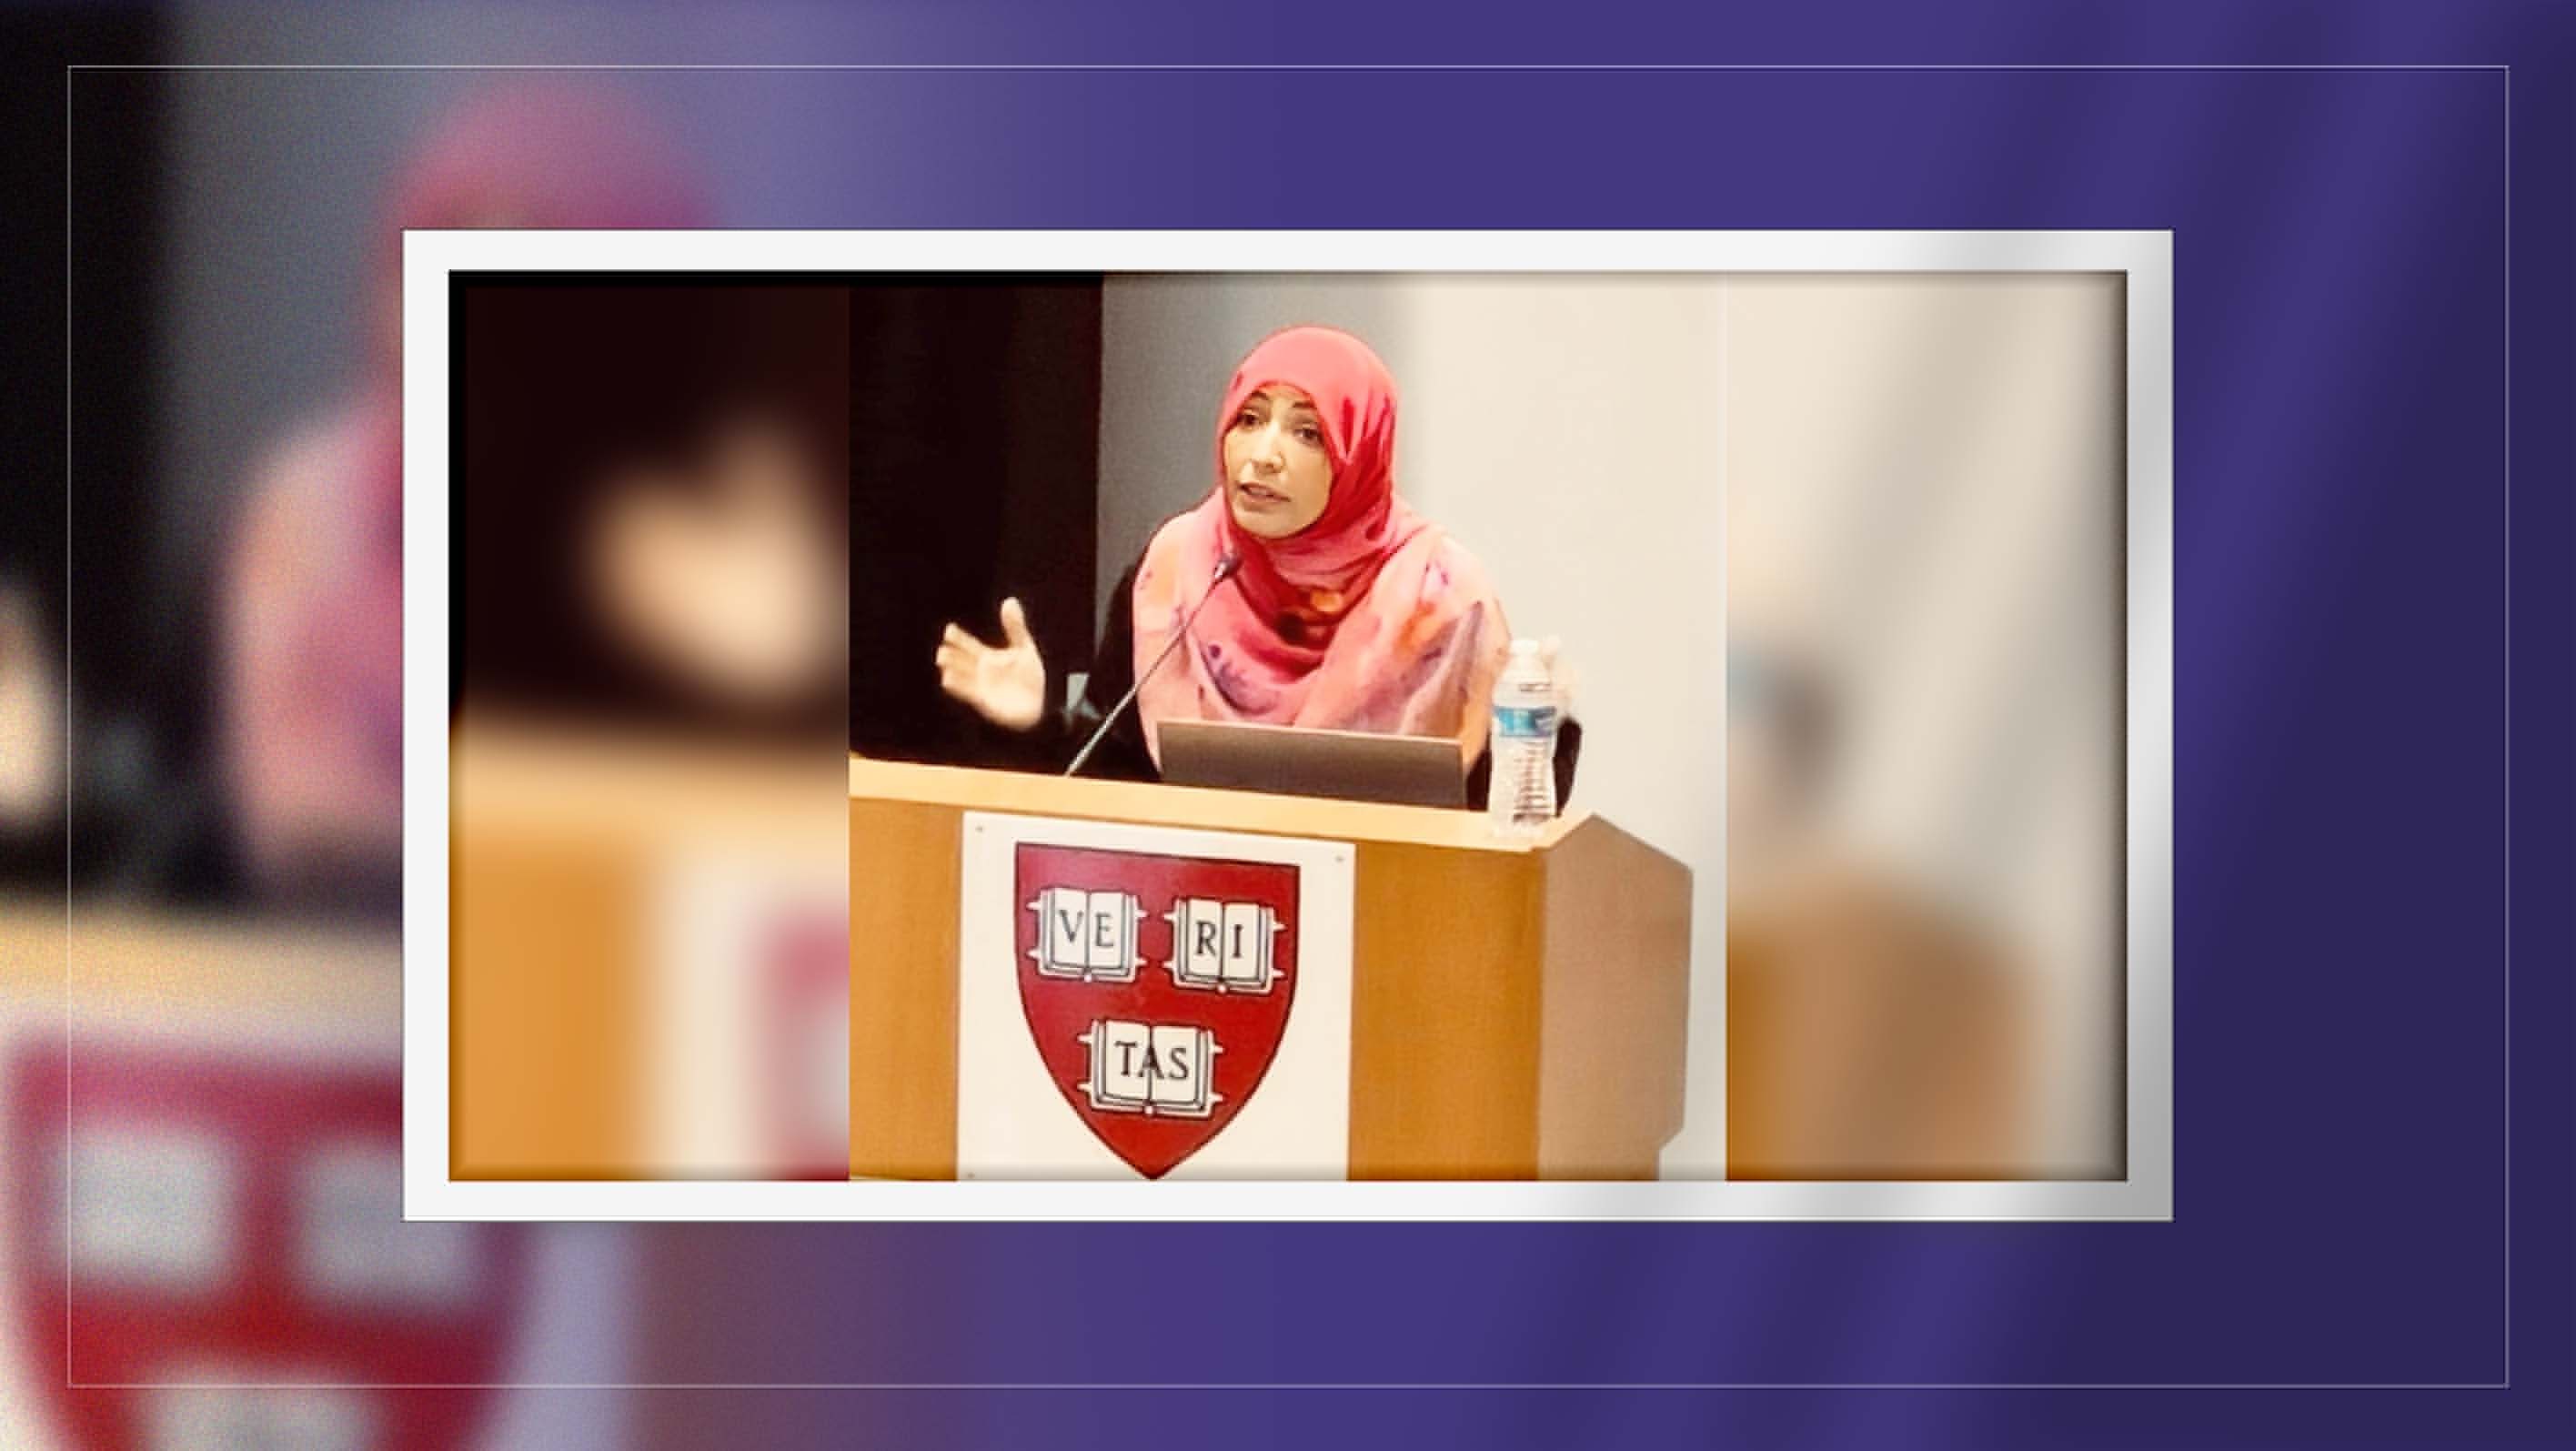 Tawakkol Karman to be speaker at 2023 Arab Conference at Harvard